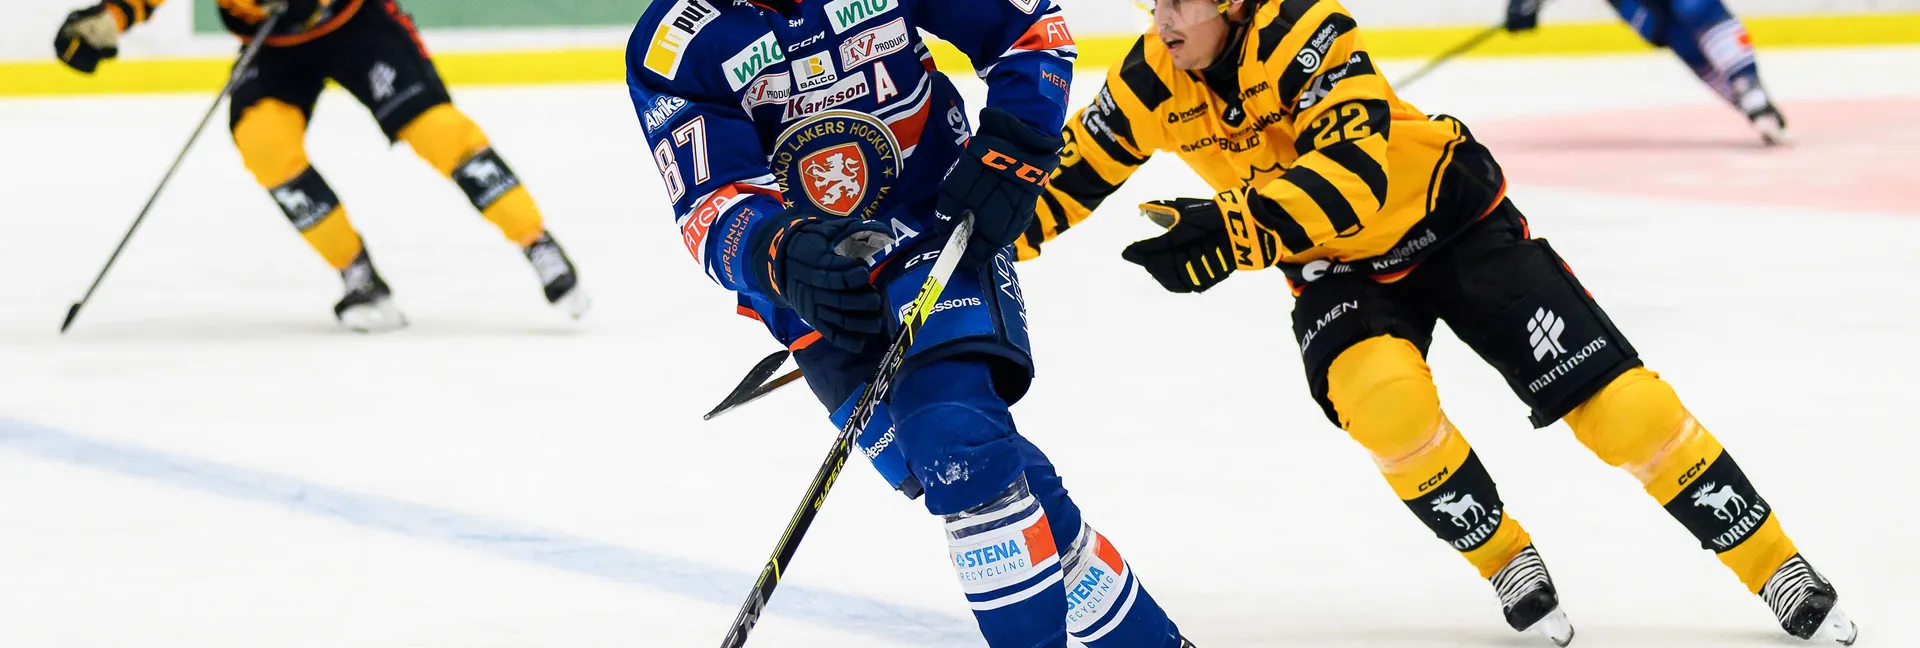 Ishockeymatch mellan Skellefteå och Växjö i SHL